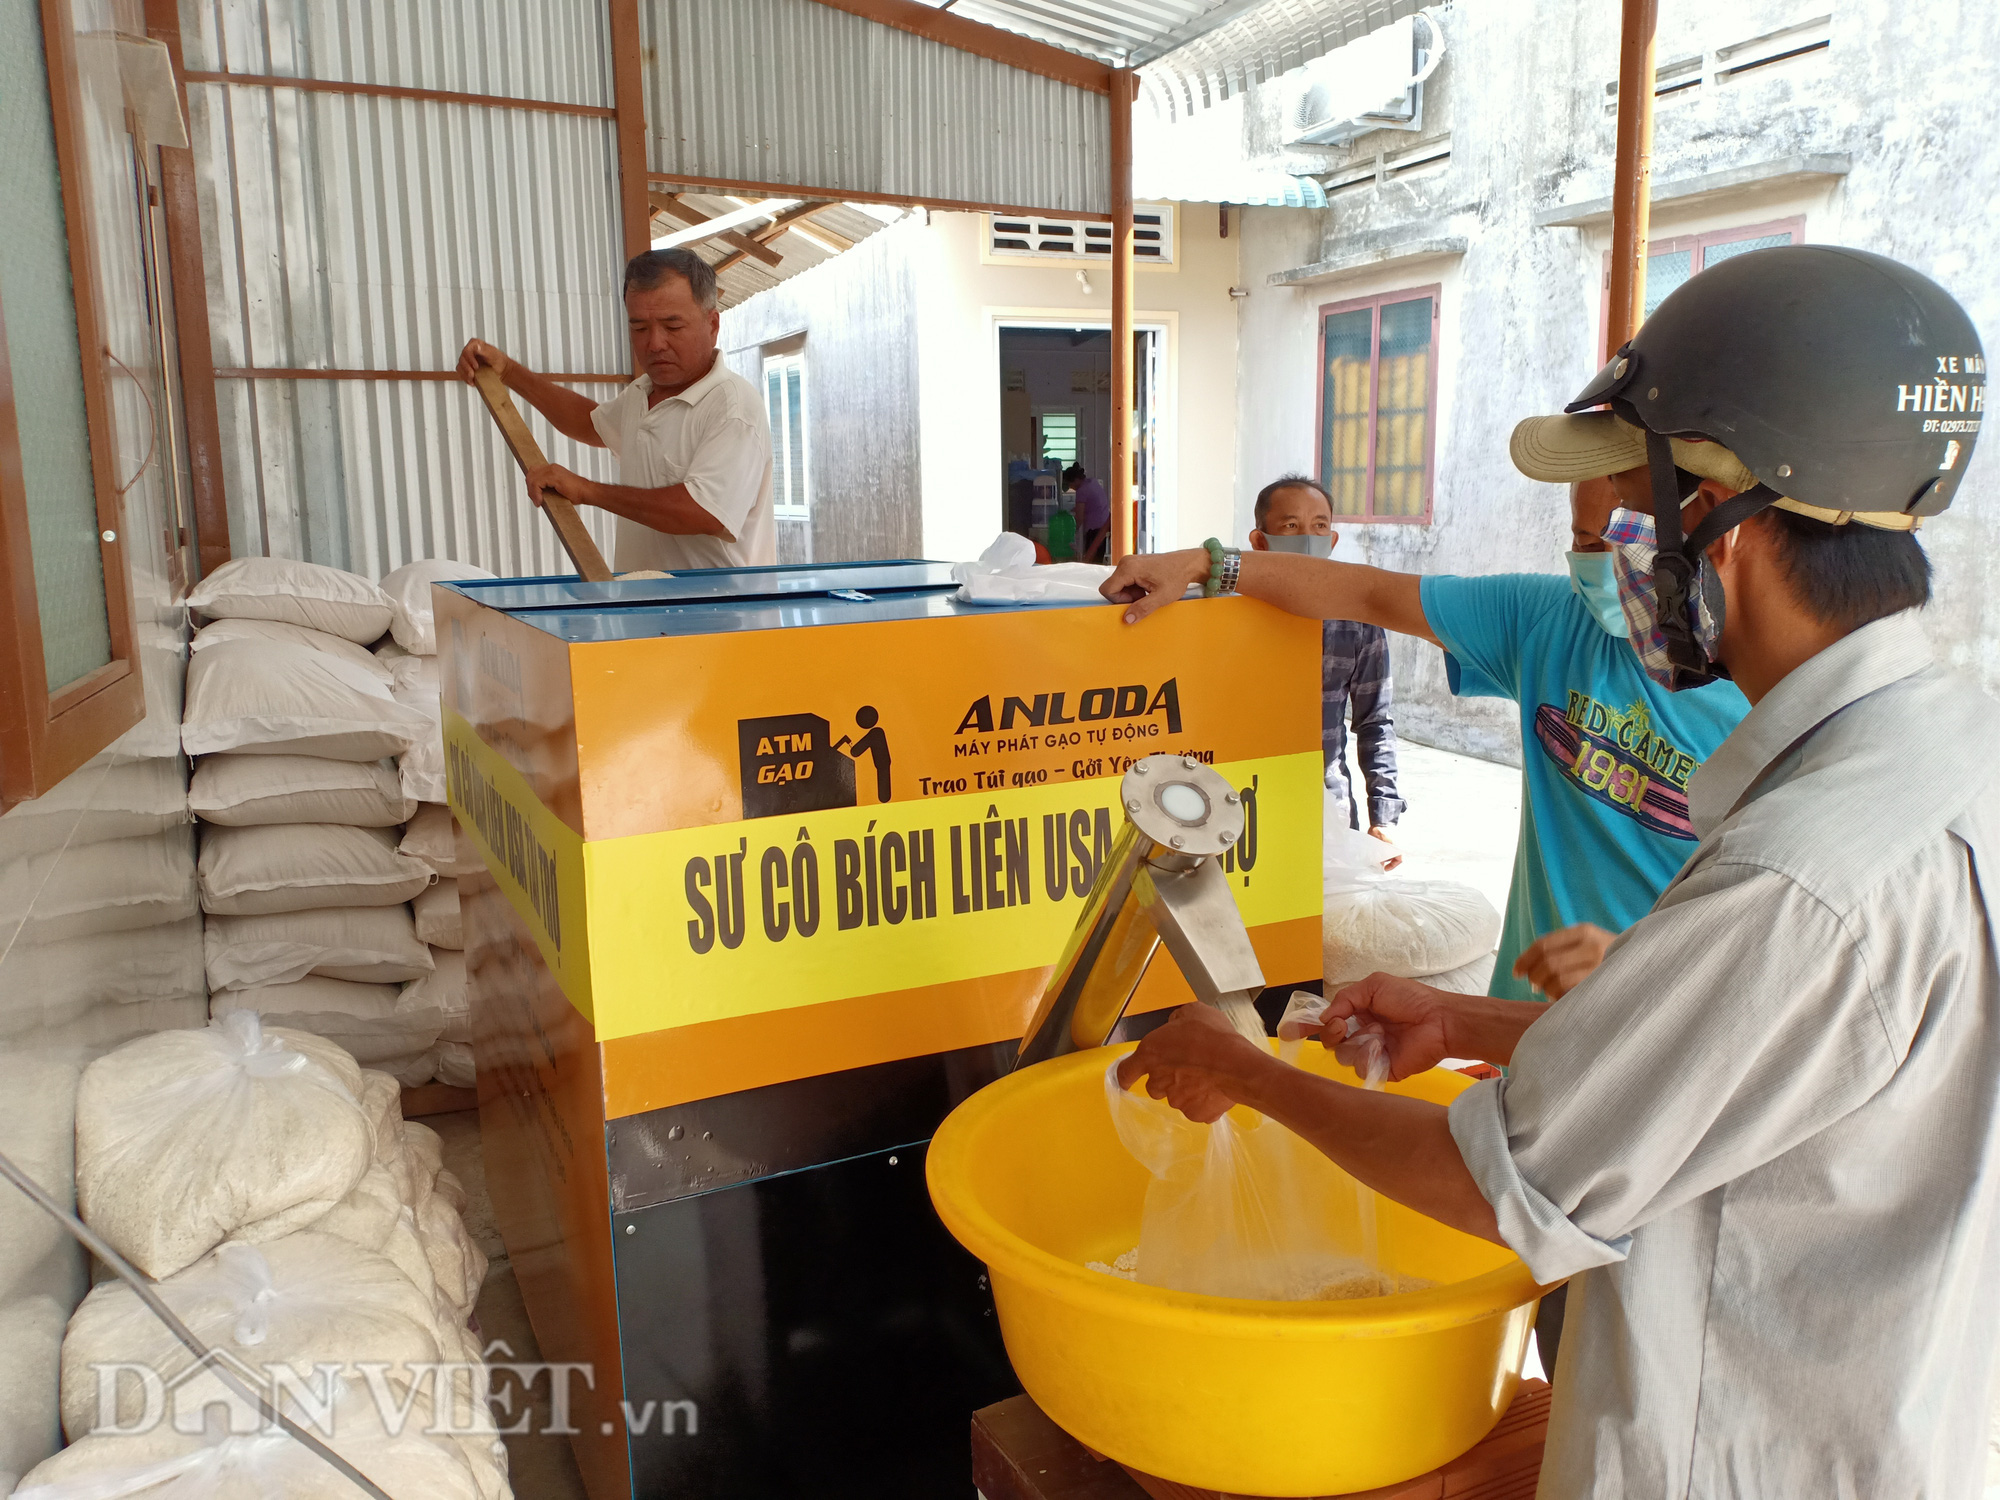 Kiên Giang: “ATM gạo” về vùng nông thôn, dân nghèo đỡ khổ - Ảnh 5.